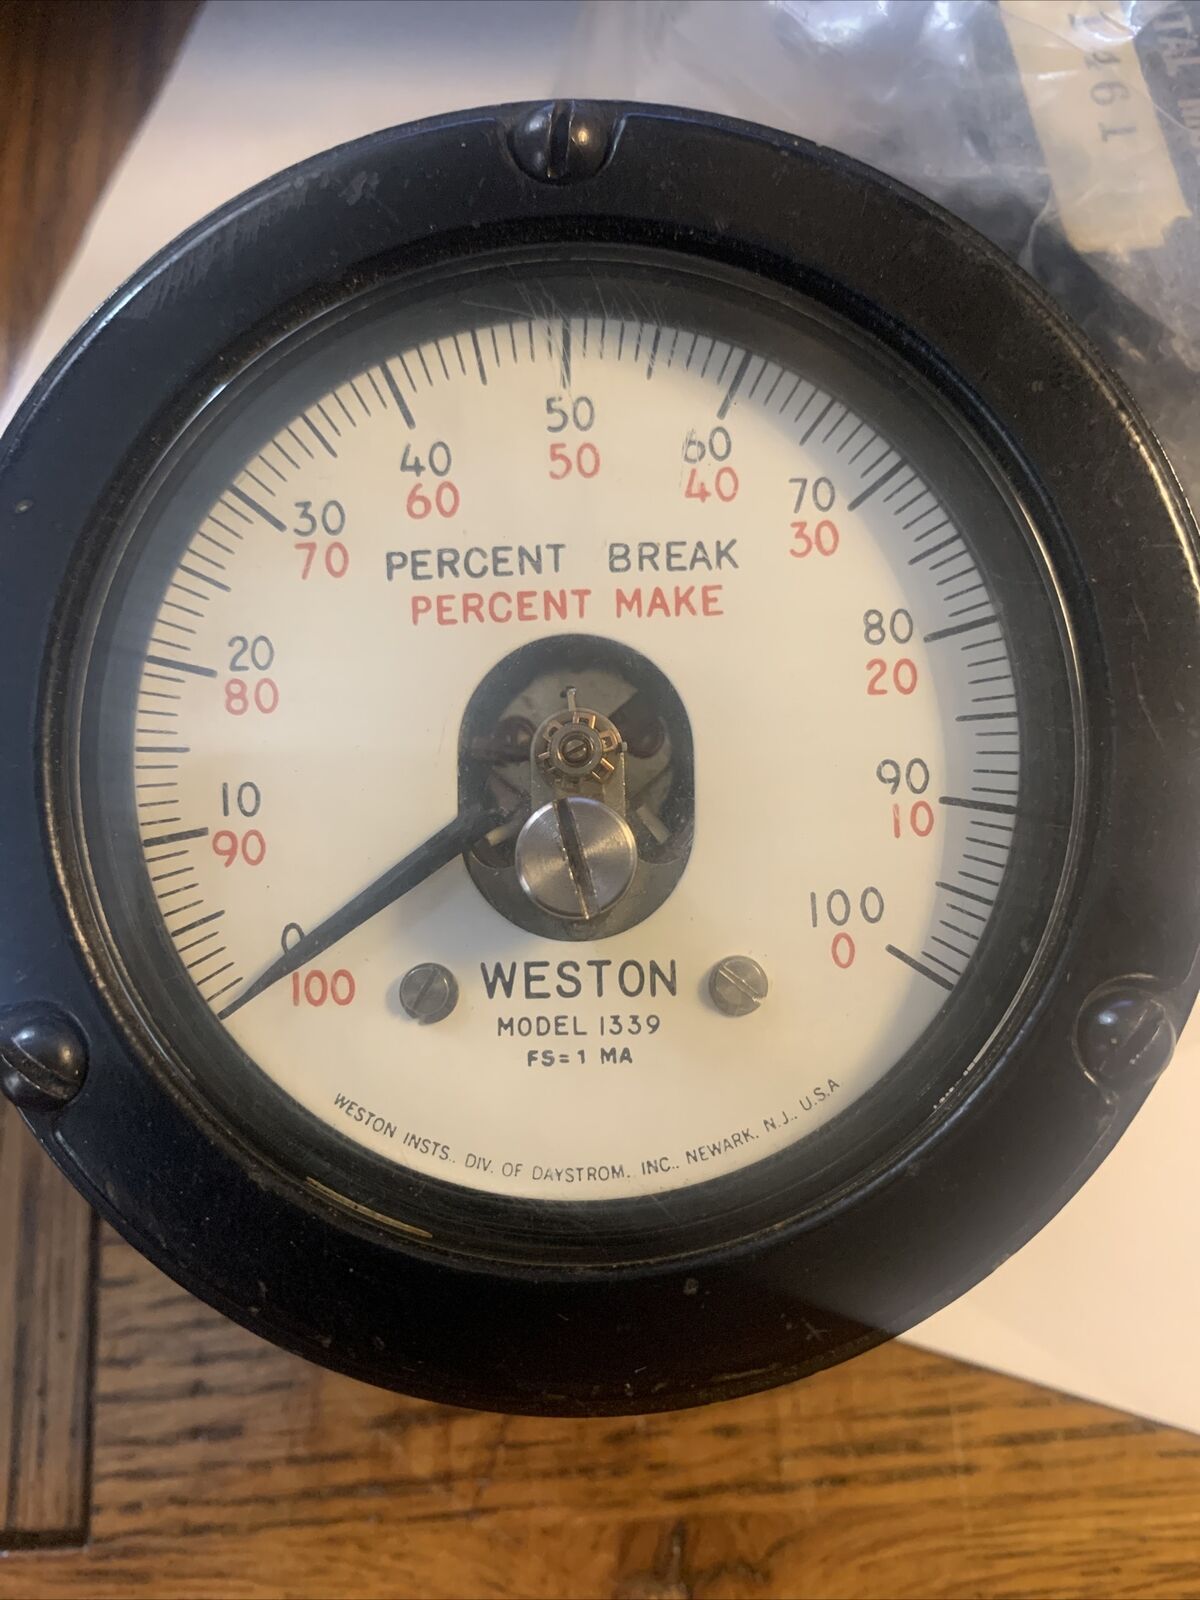 Vintage Weston model 1339 Electric panel meter gauge percent make break 0-100